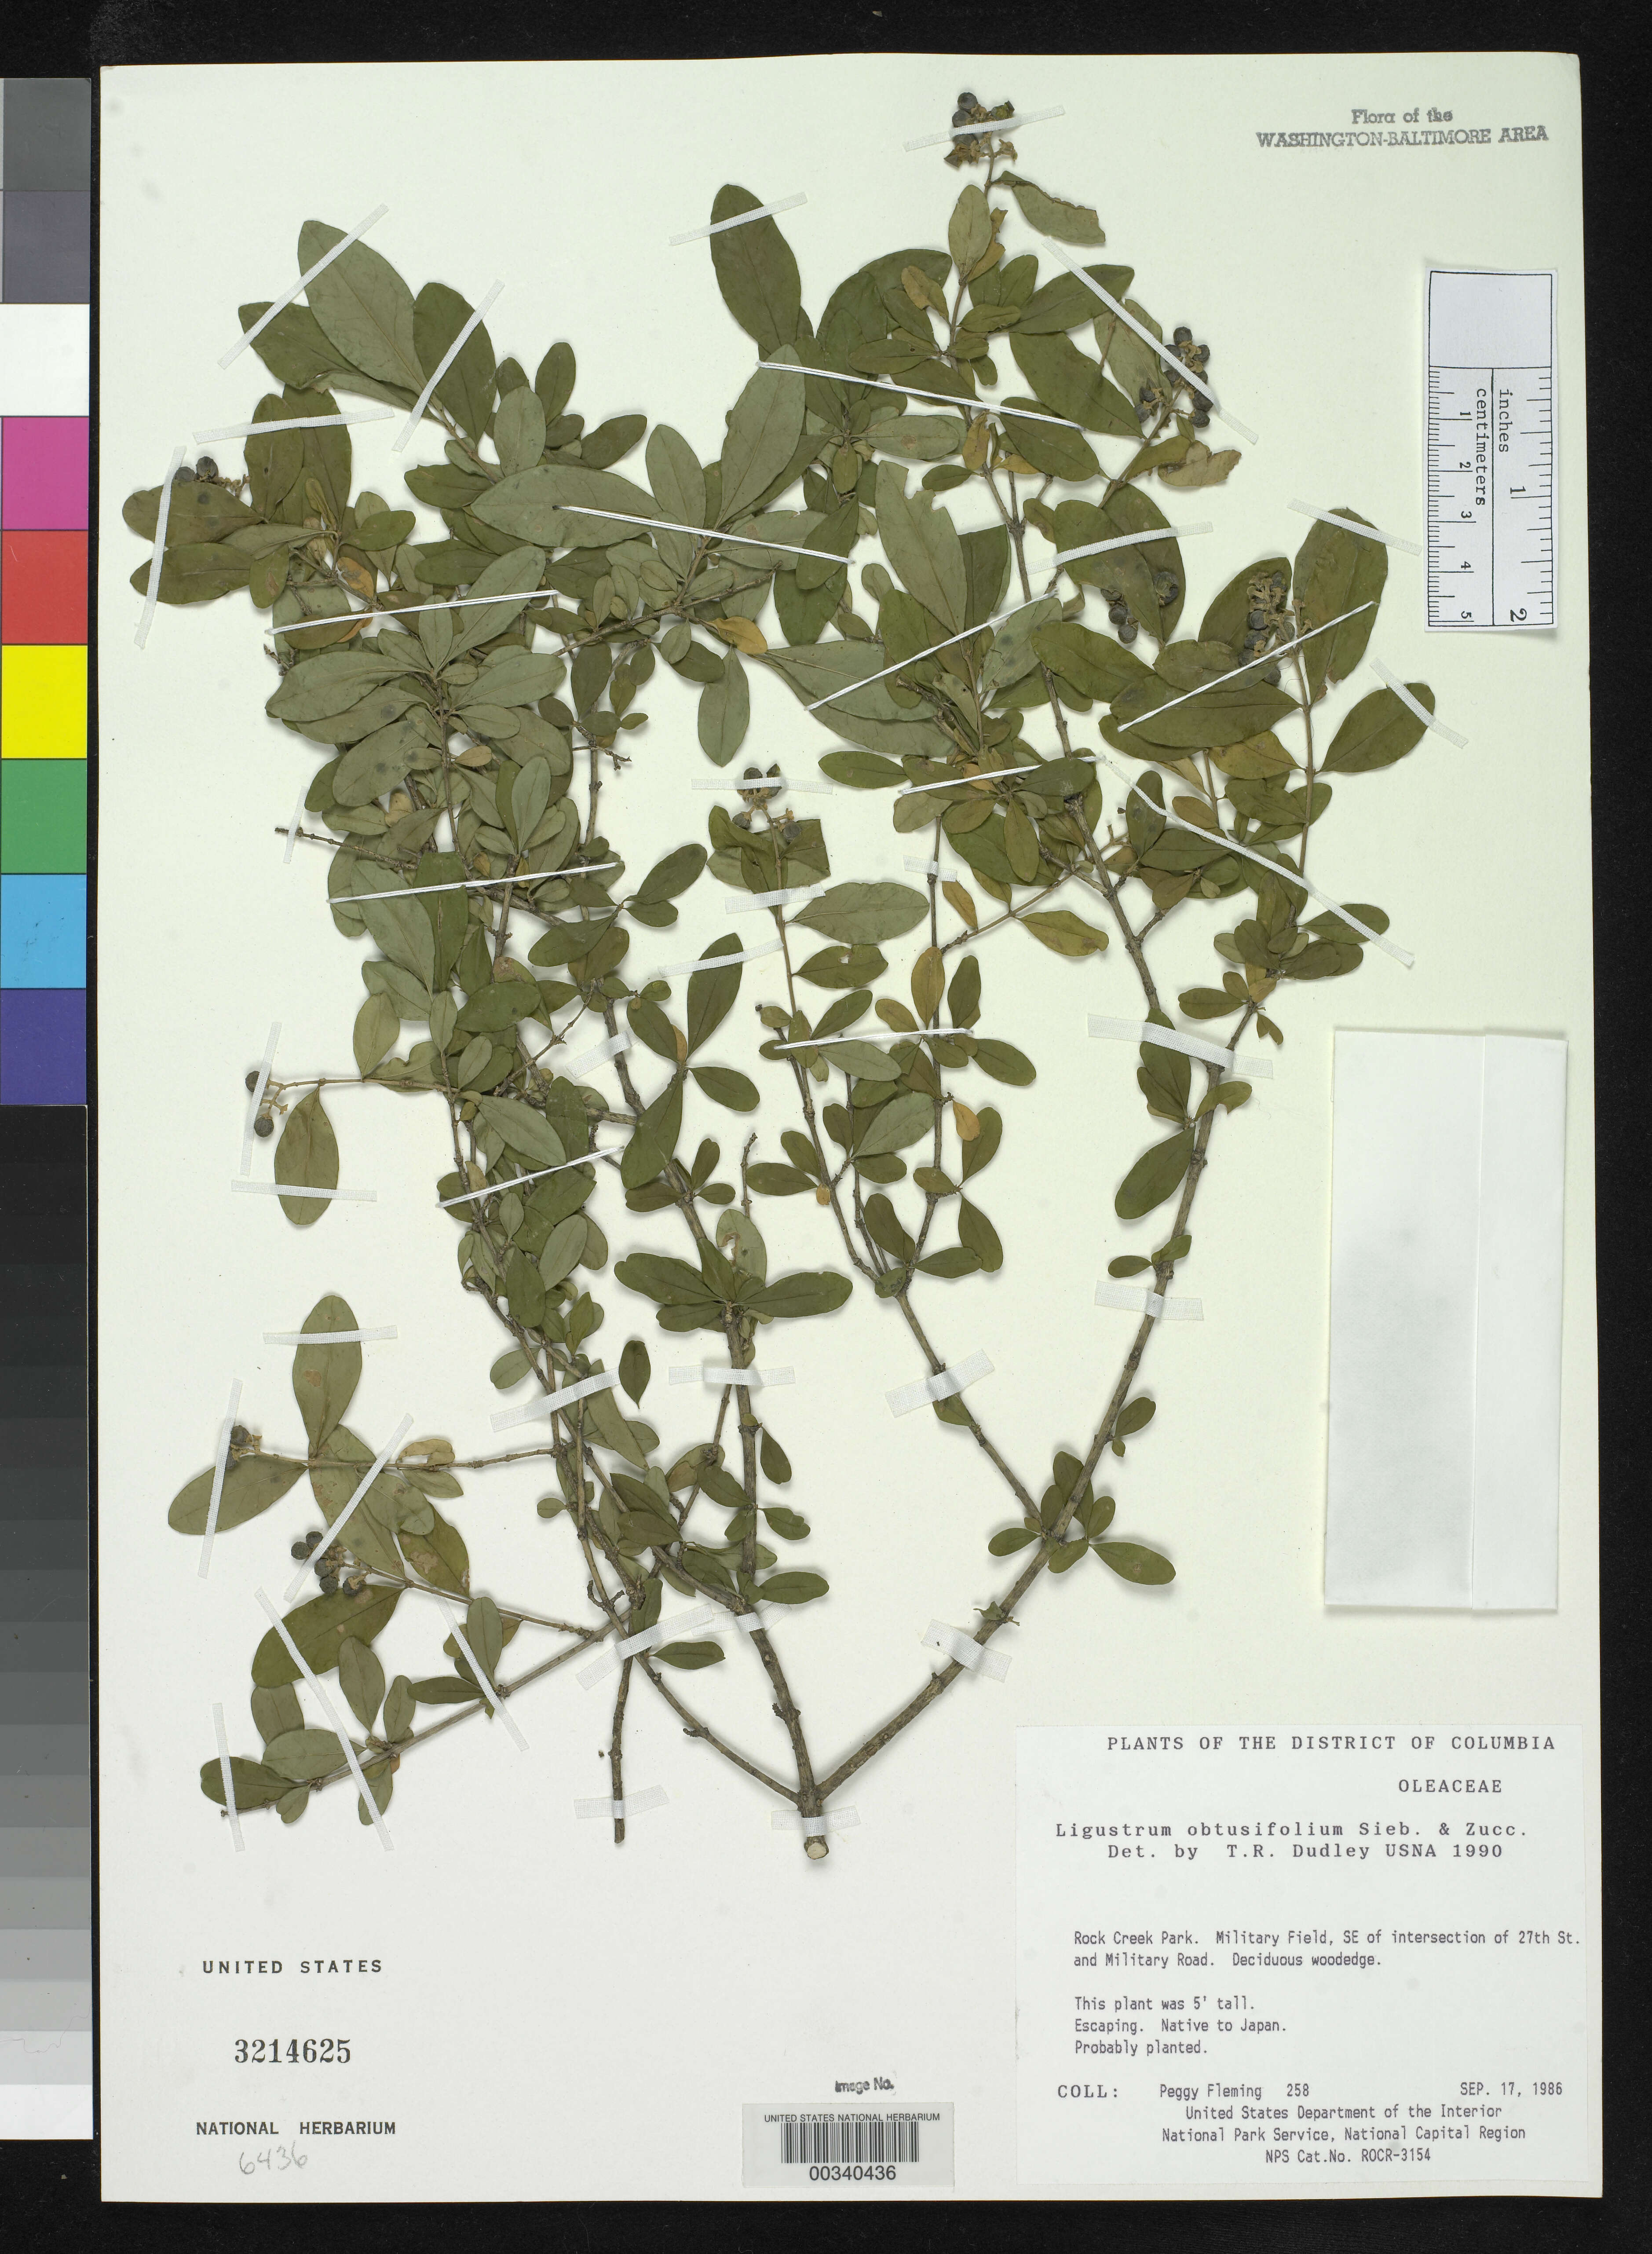 Plancia ëd Ligustrum obtusifolium Siebold & Zucc.